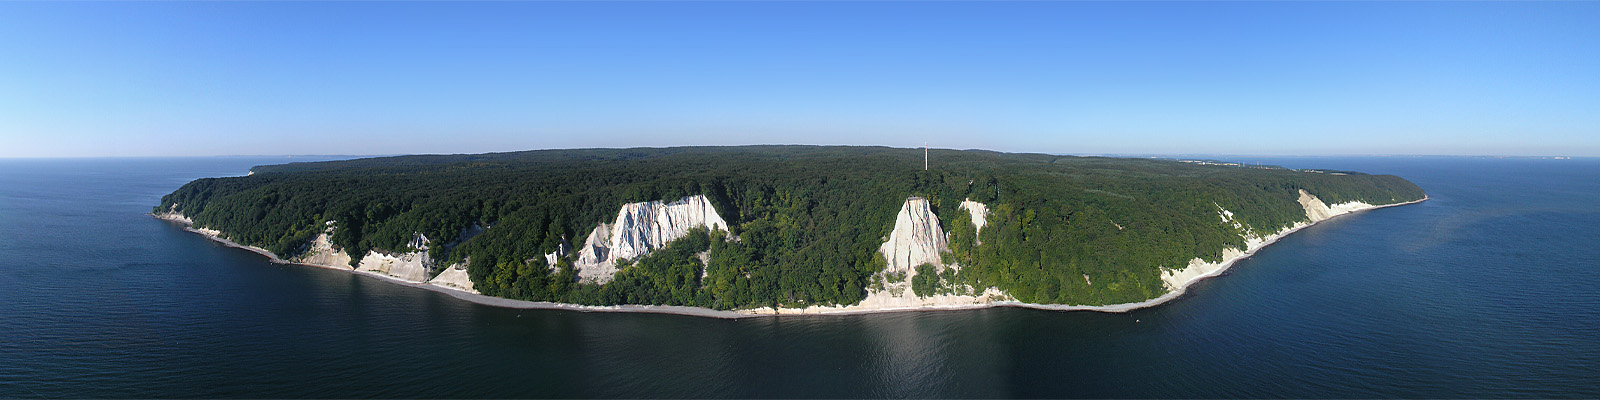 Panorama: Königsstuhl Luftbild - Motivnummer: rug-kre-05